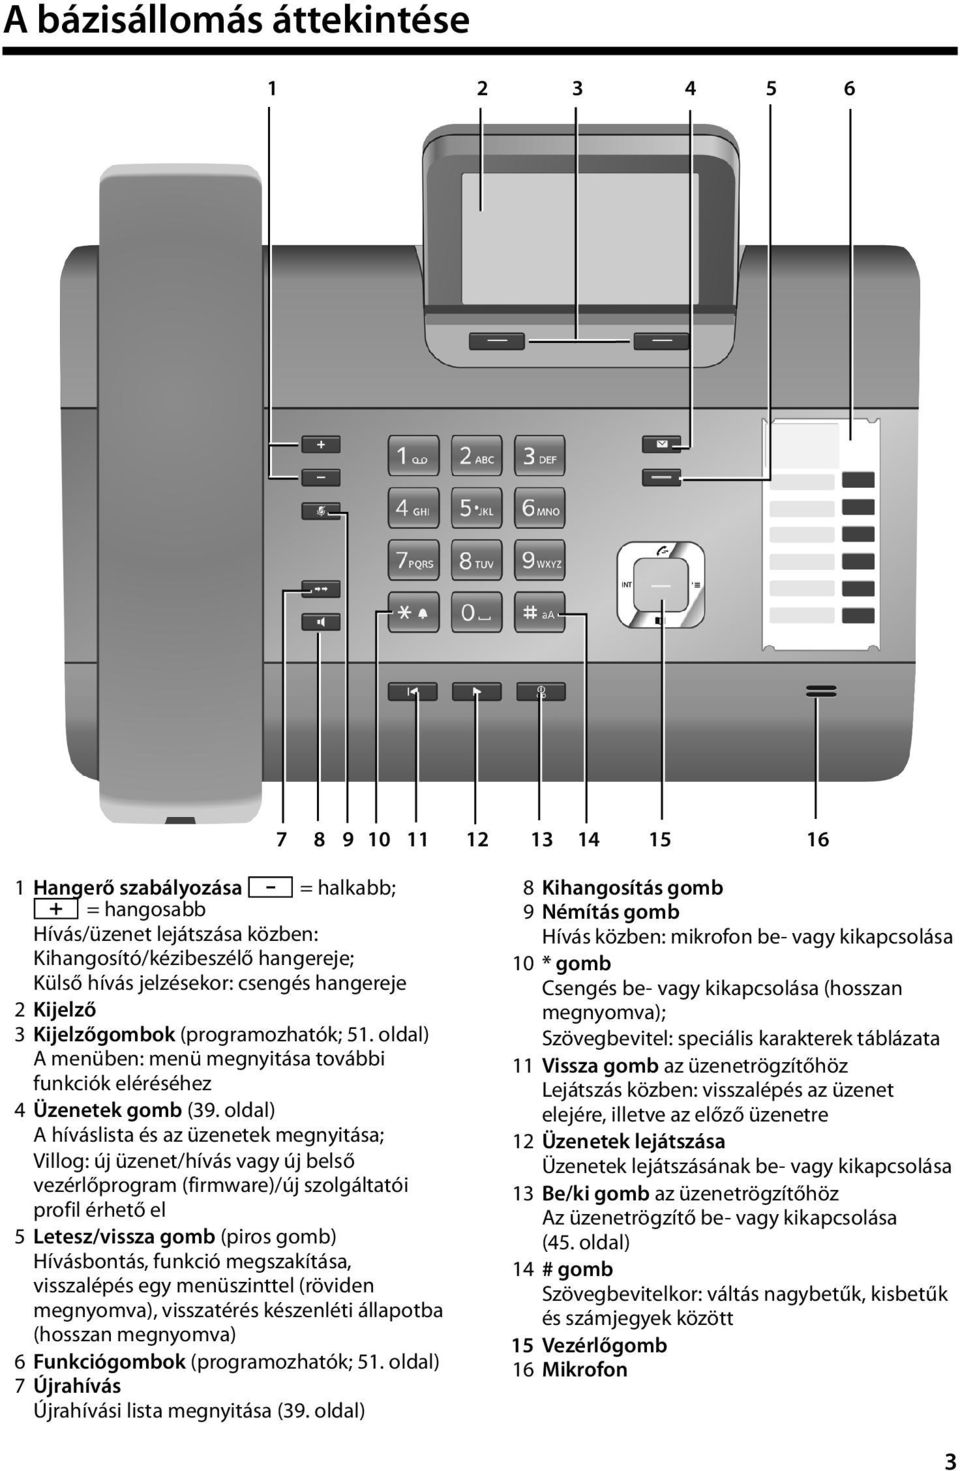 oldal) A híváslista és az üzenetek megnyitása; Villog: új üzenet/hívás vagy új belső vezérlőprogram (firmware)/új szolgáltatói profil érhető el 5 Letesz/vissza gomb (piros gomb) Hívásbontás, funkció